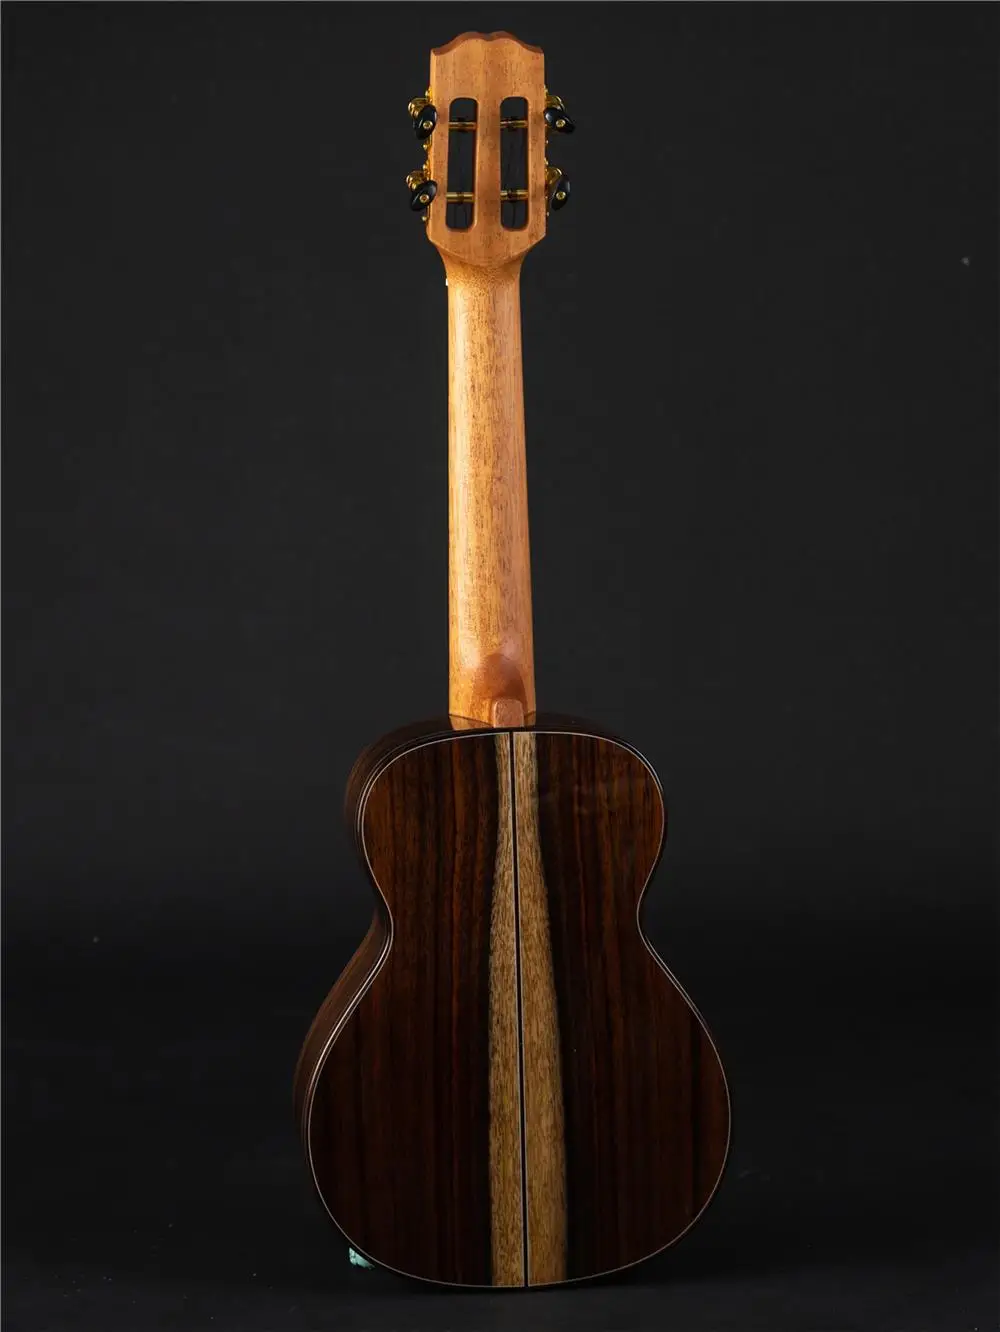 TC-01, TT-01, концертный и тенор tikis бренд ukuleles, твердая деревянная Гавайская гитара